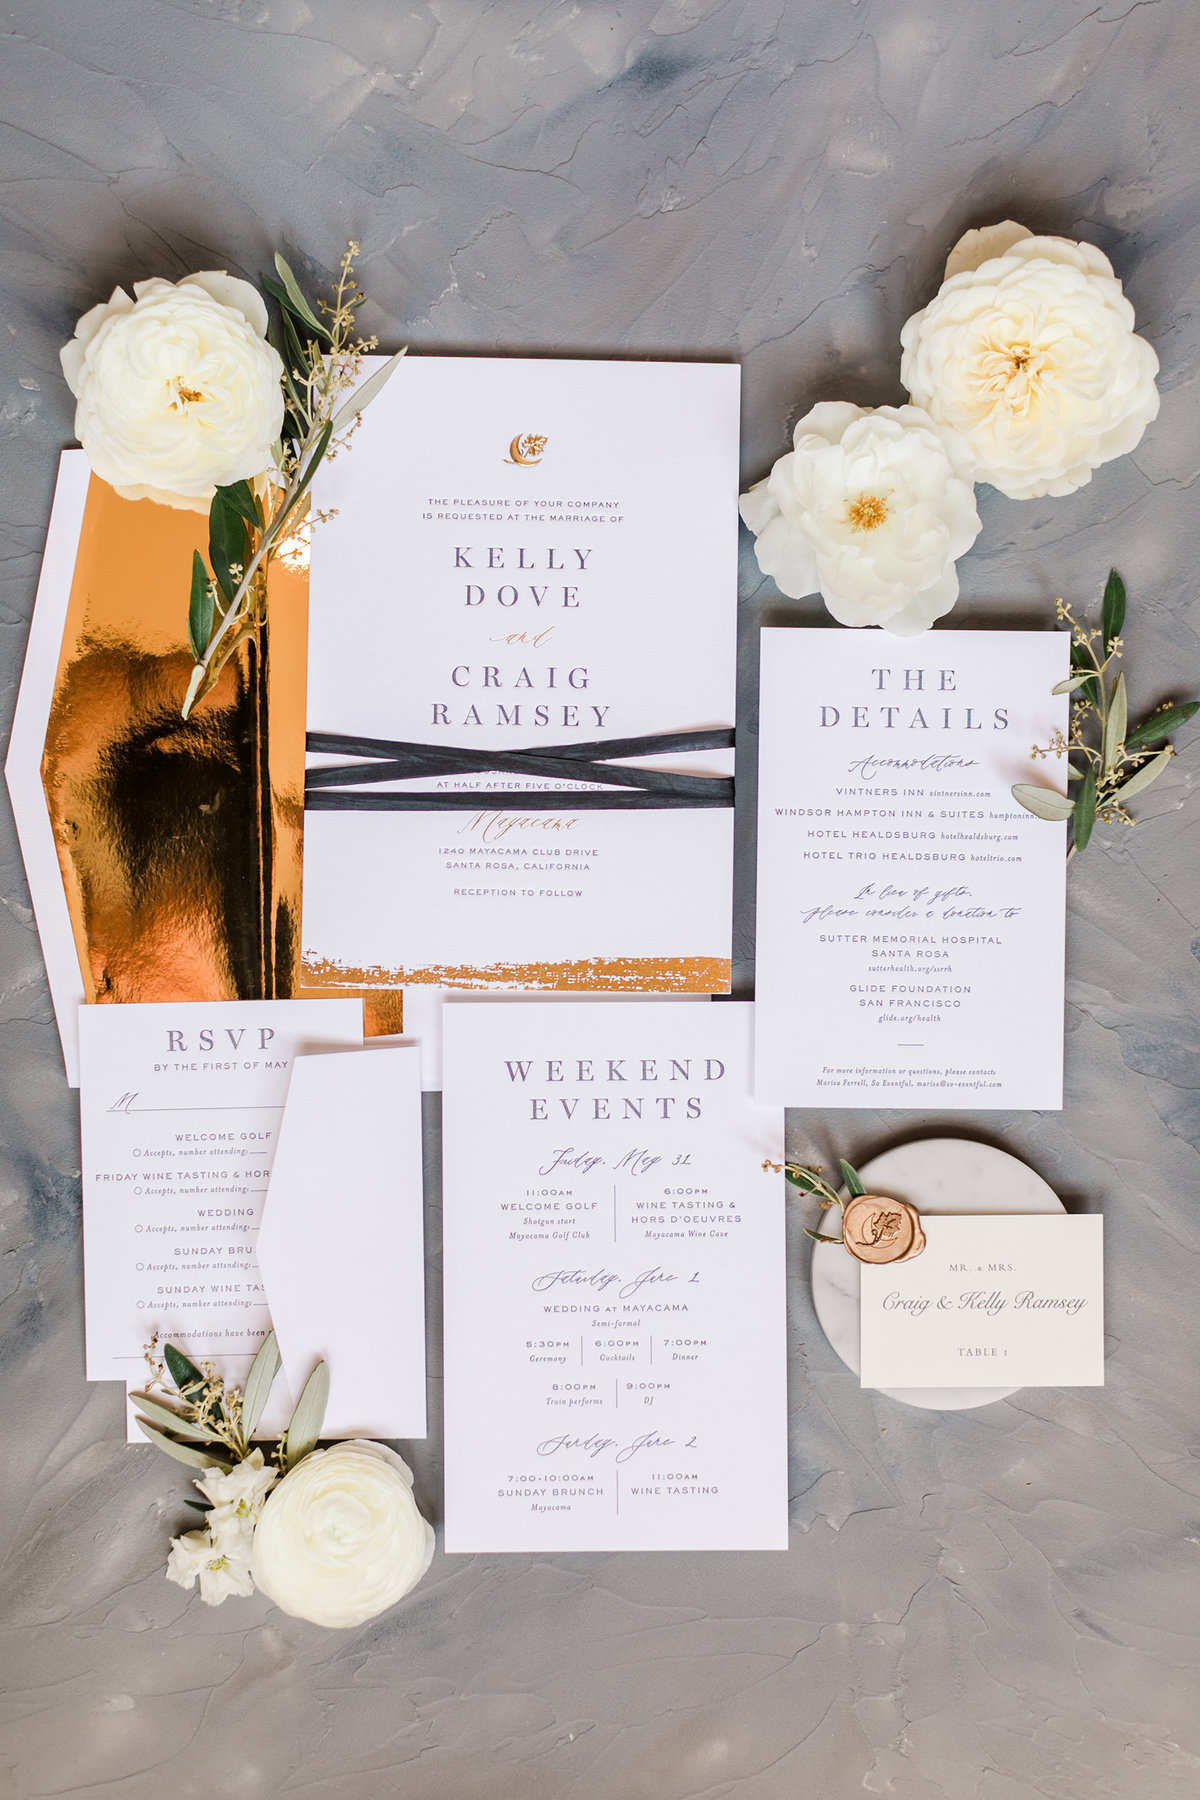 WeddingInvitations-PaperByTheBay-SantaRosa-ValerieDarling-001